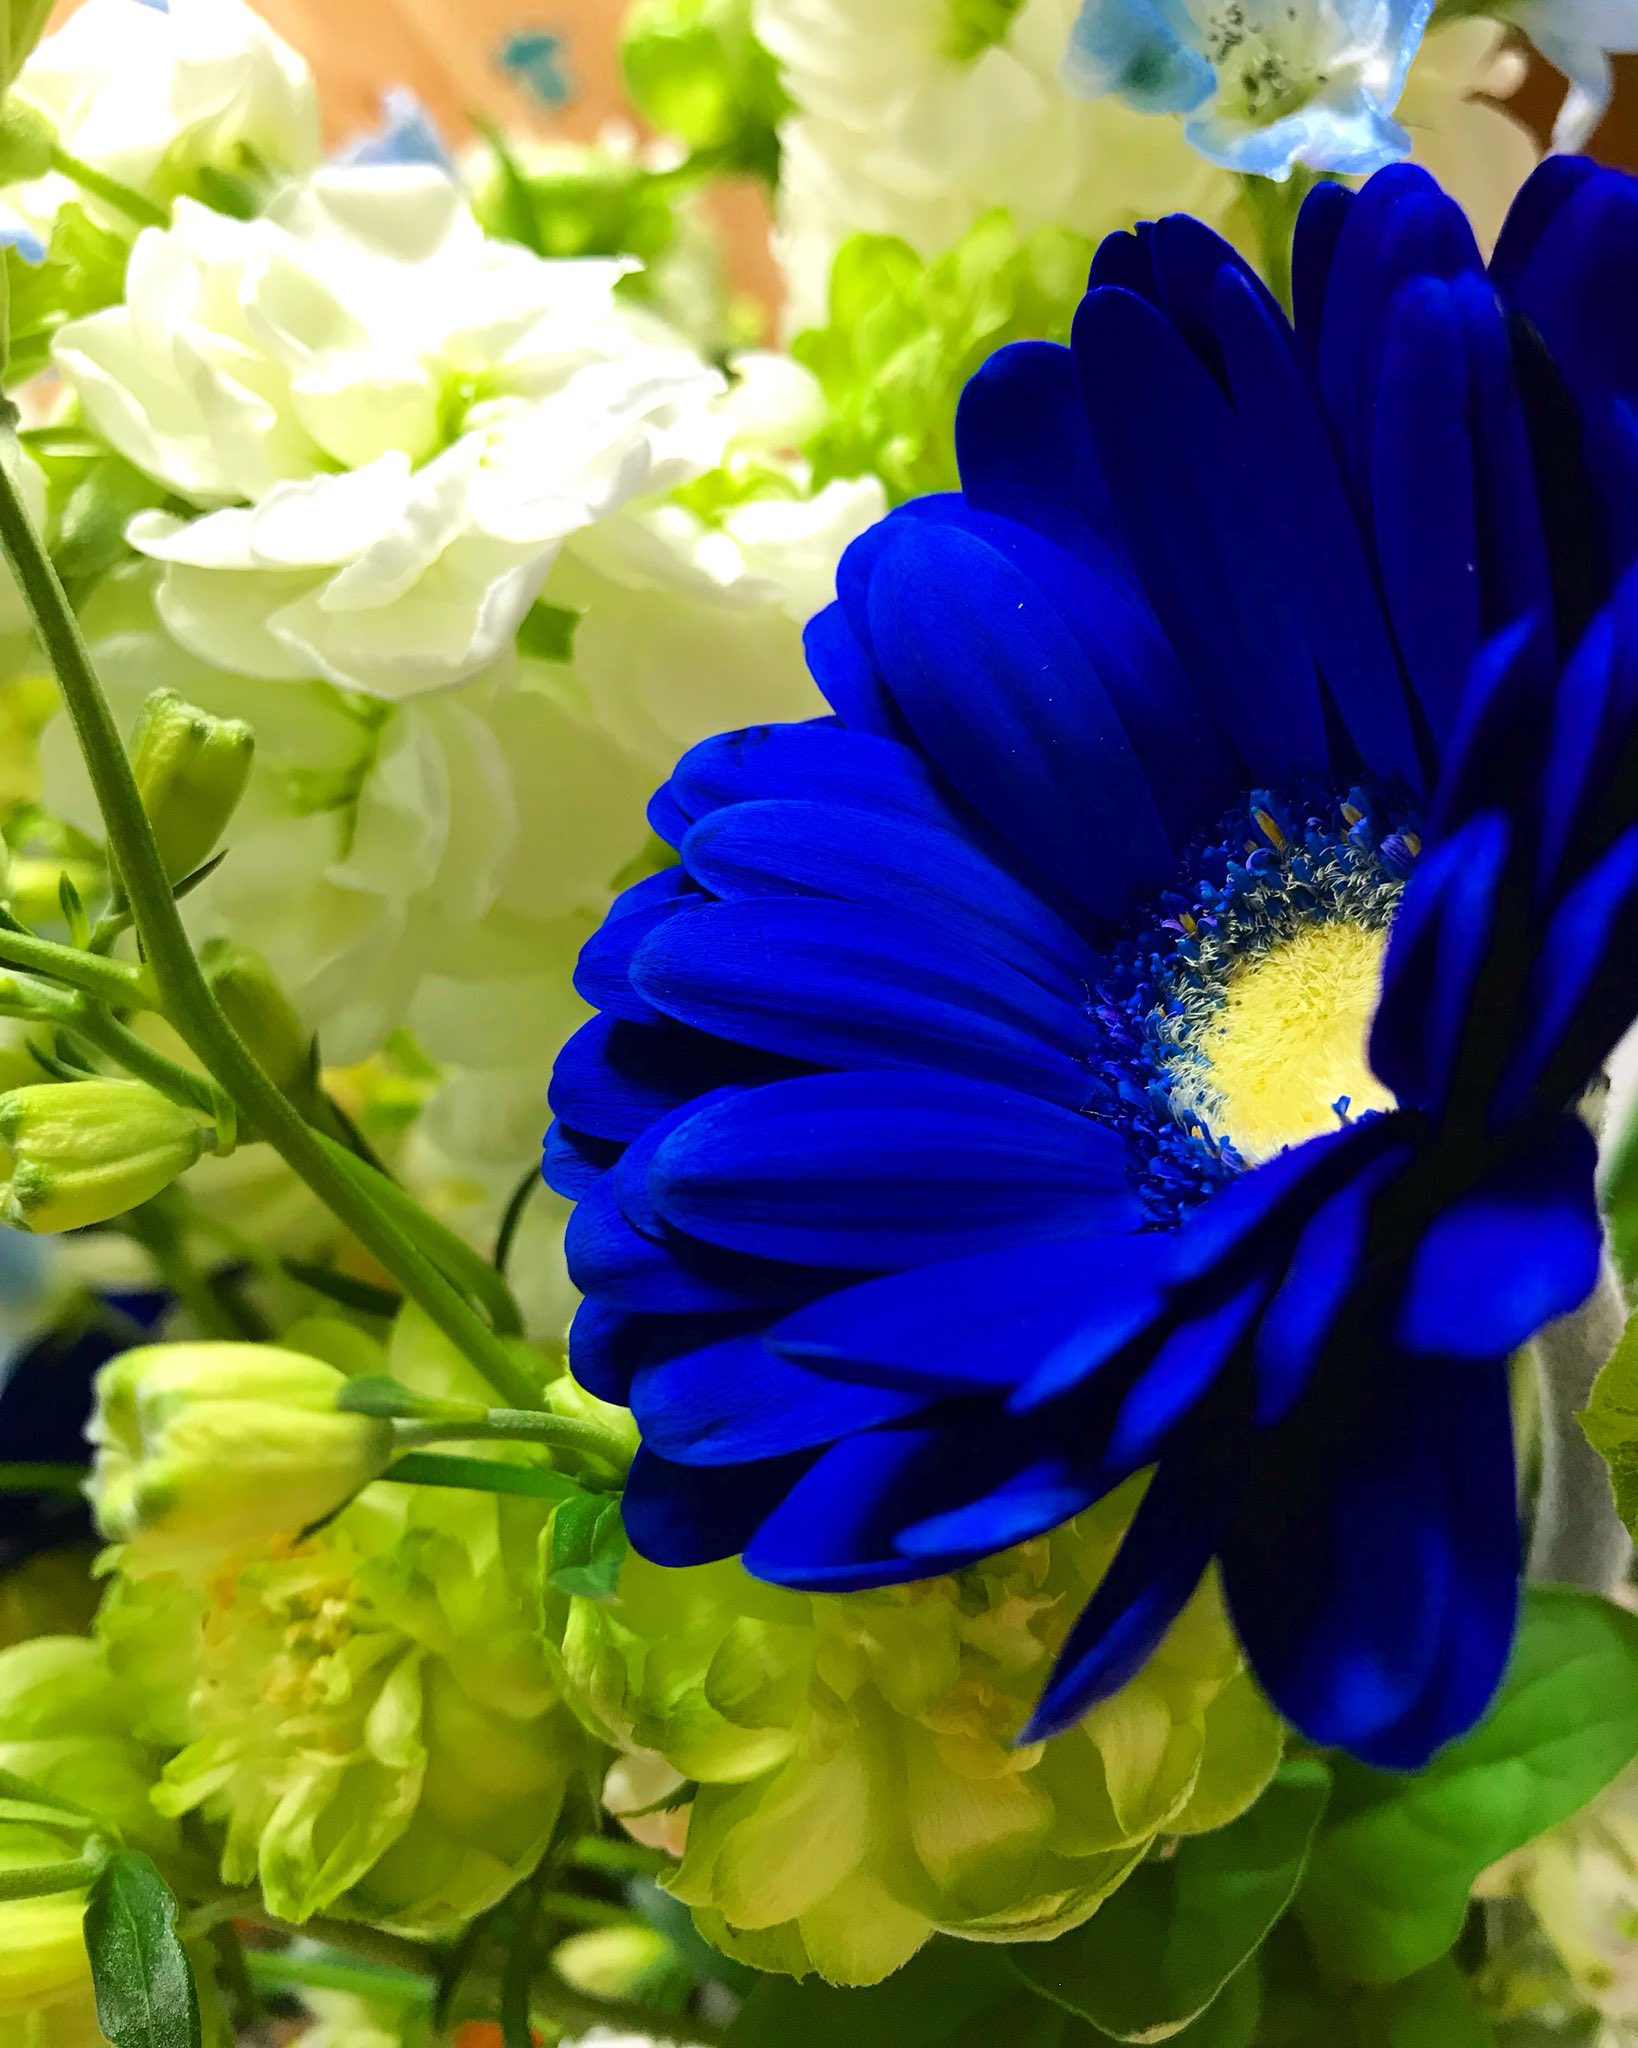 高橋里央在twitter 上 青のガーベラ 本当綺麗だ 雪の国の青い花 T Co Ril1o2f3a4 Twitter